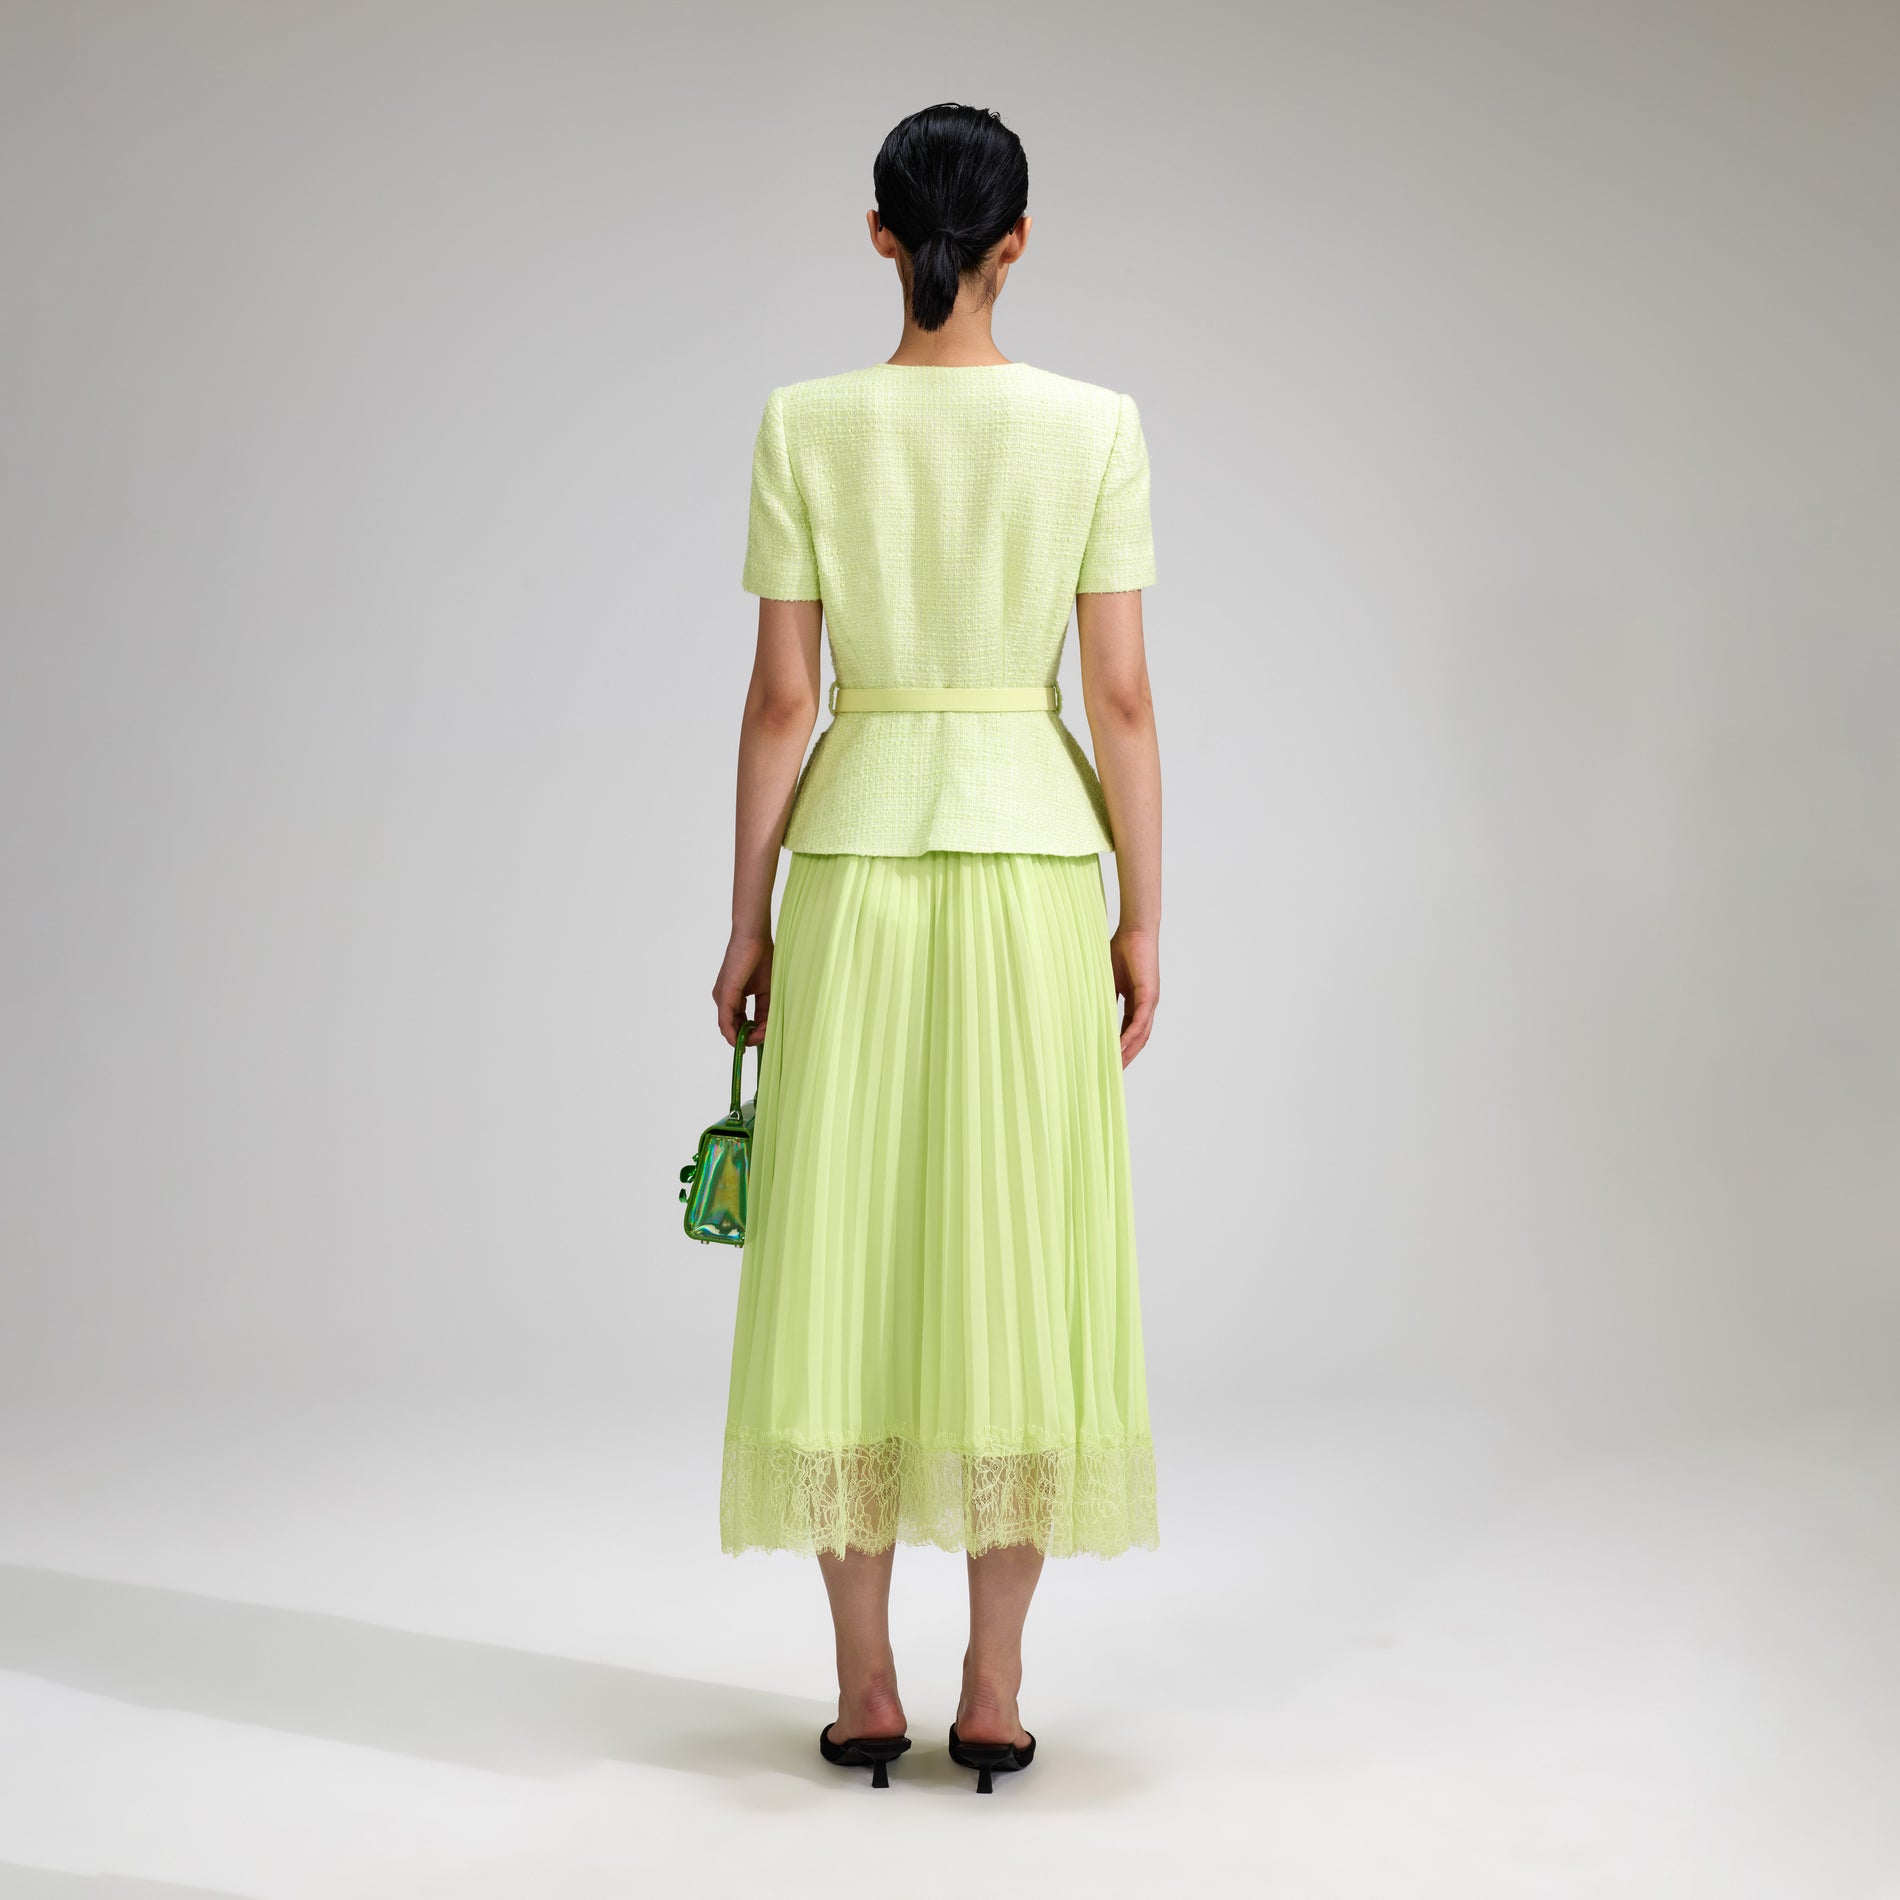 A woman wearing the Lime Boucle Chiffon Midi Dress